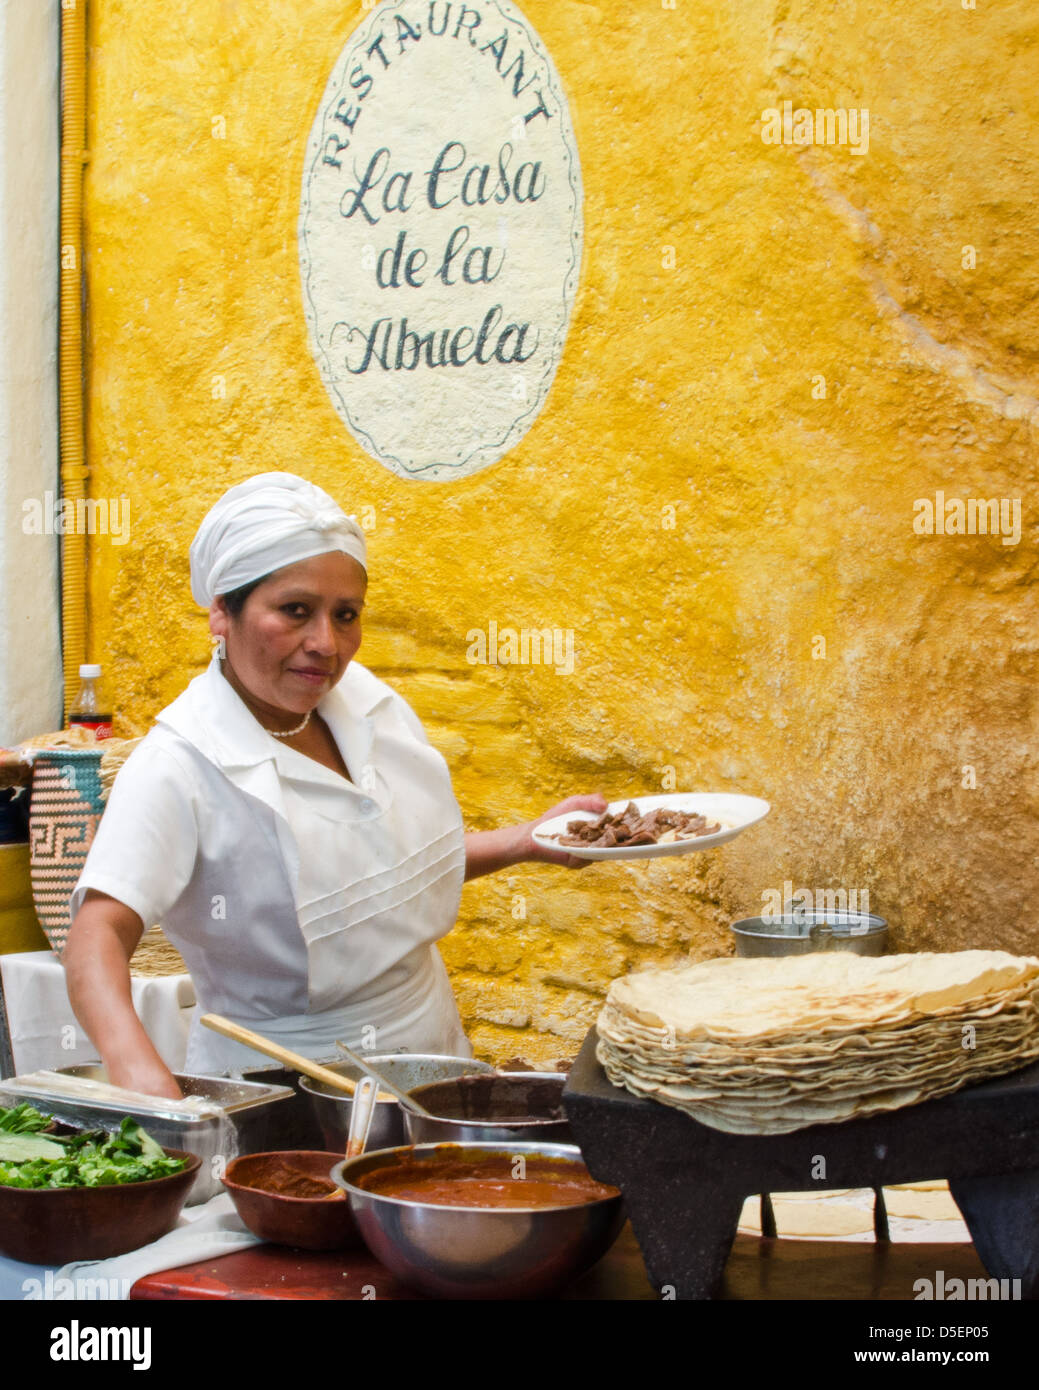 Chef at La Casa de la Abuela, a restaurant specializing in traditional Oaxacan cusine, on the Zocalo in Oaxaca de Juarez Mexico. Stock Photo